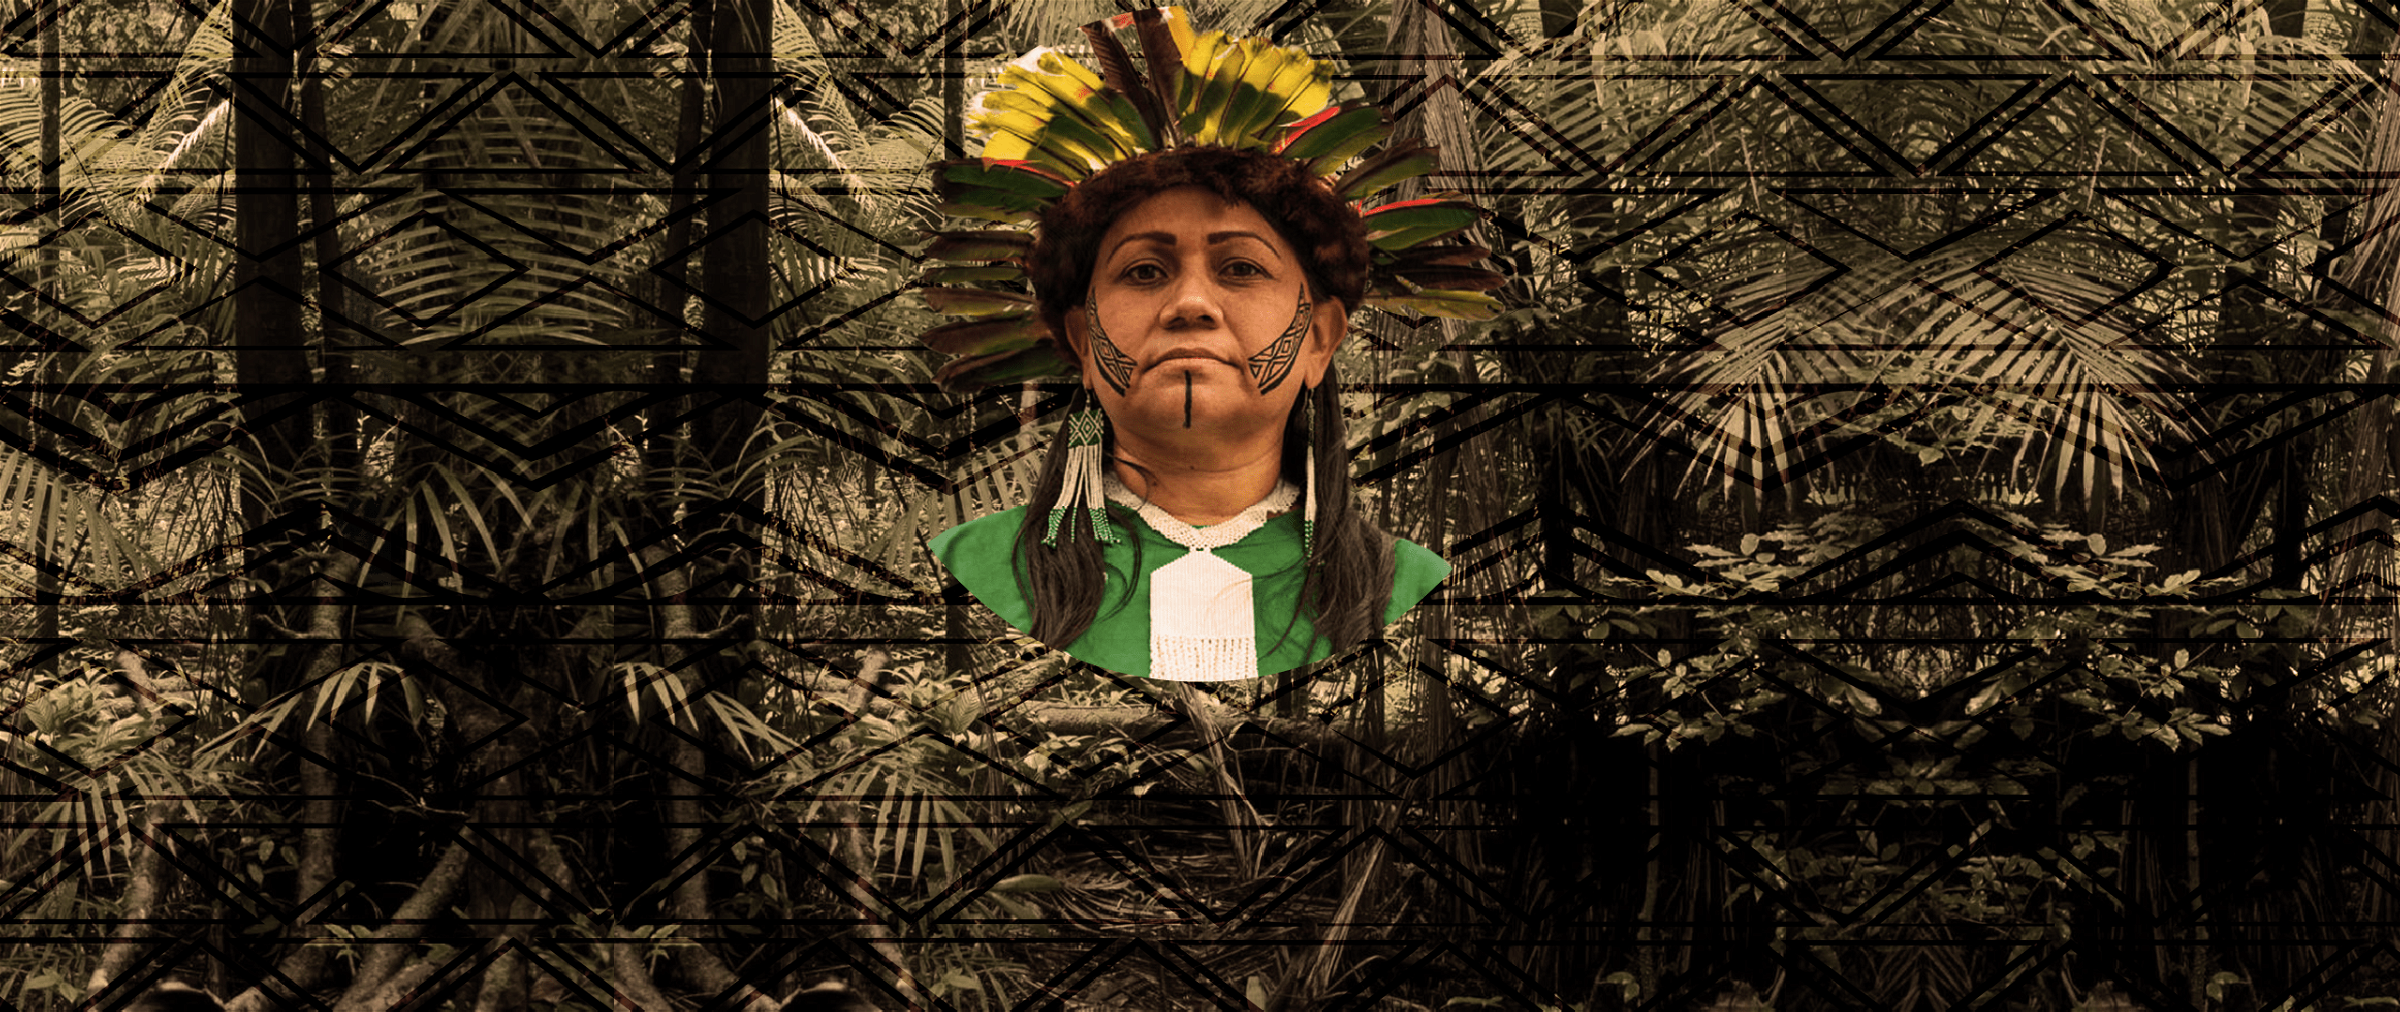 Indígenas e Amazônia são uma coisa só